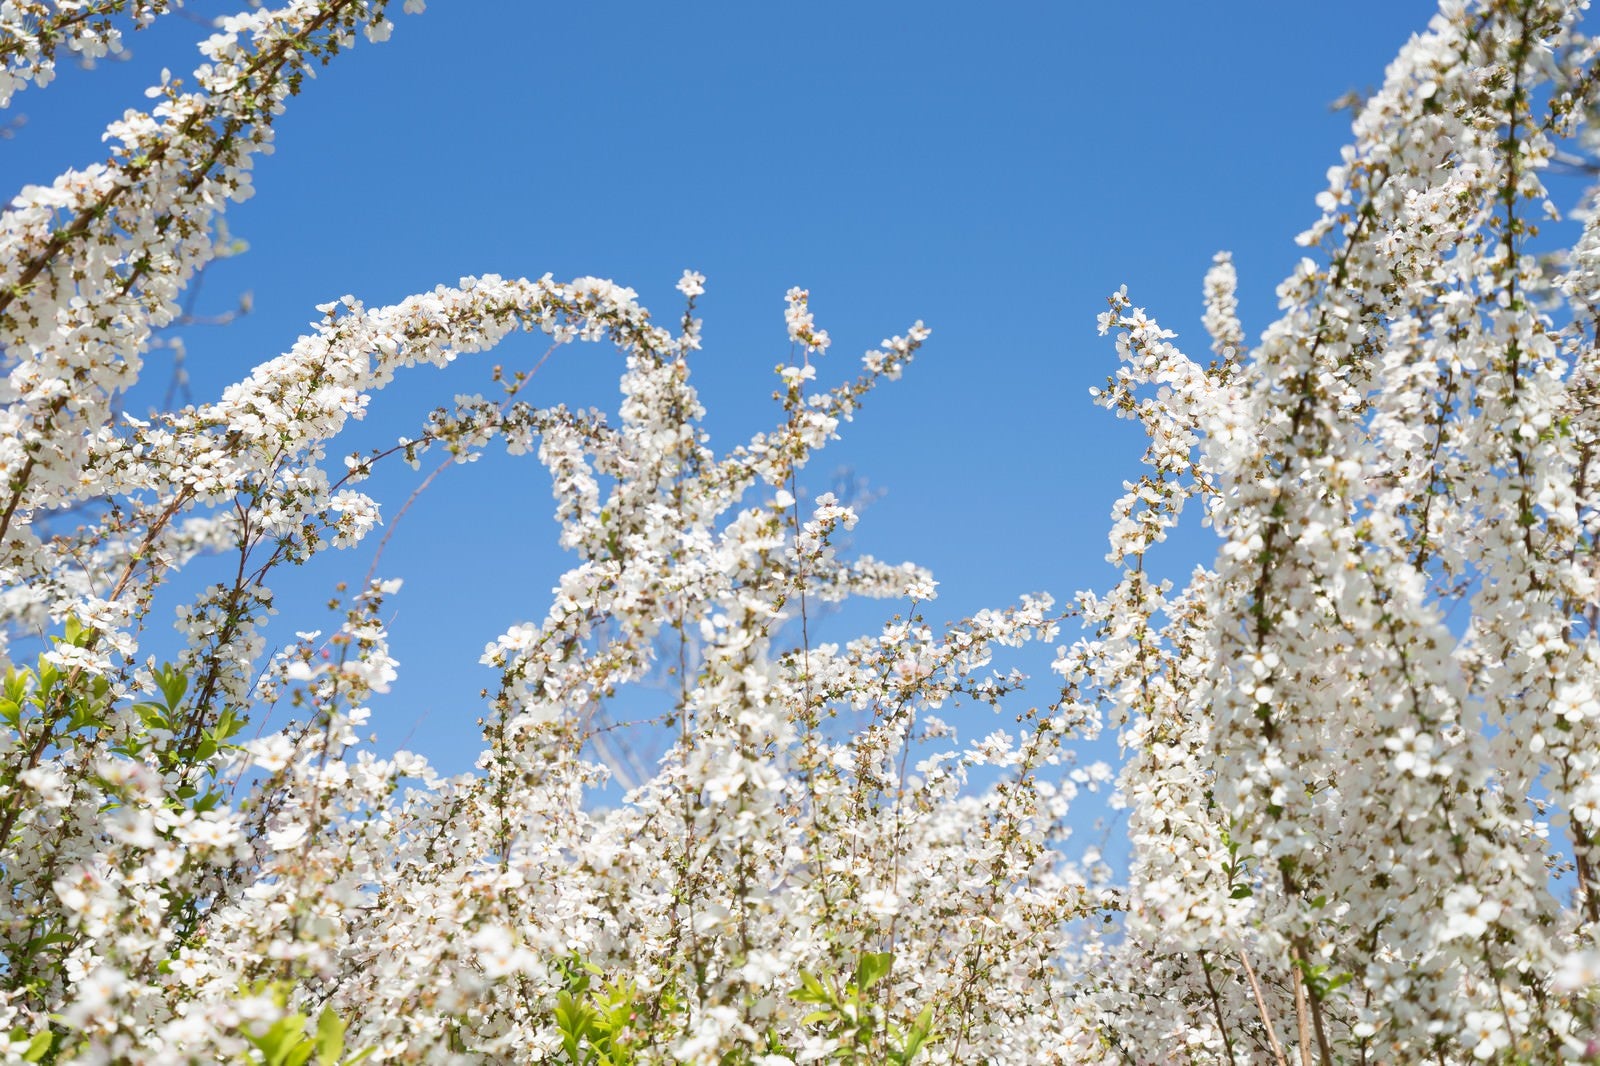 「葉桜と青空」の写真